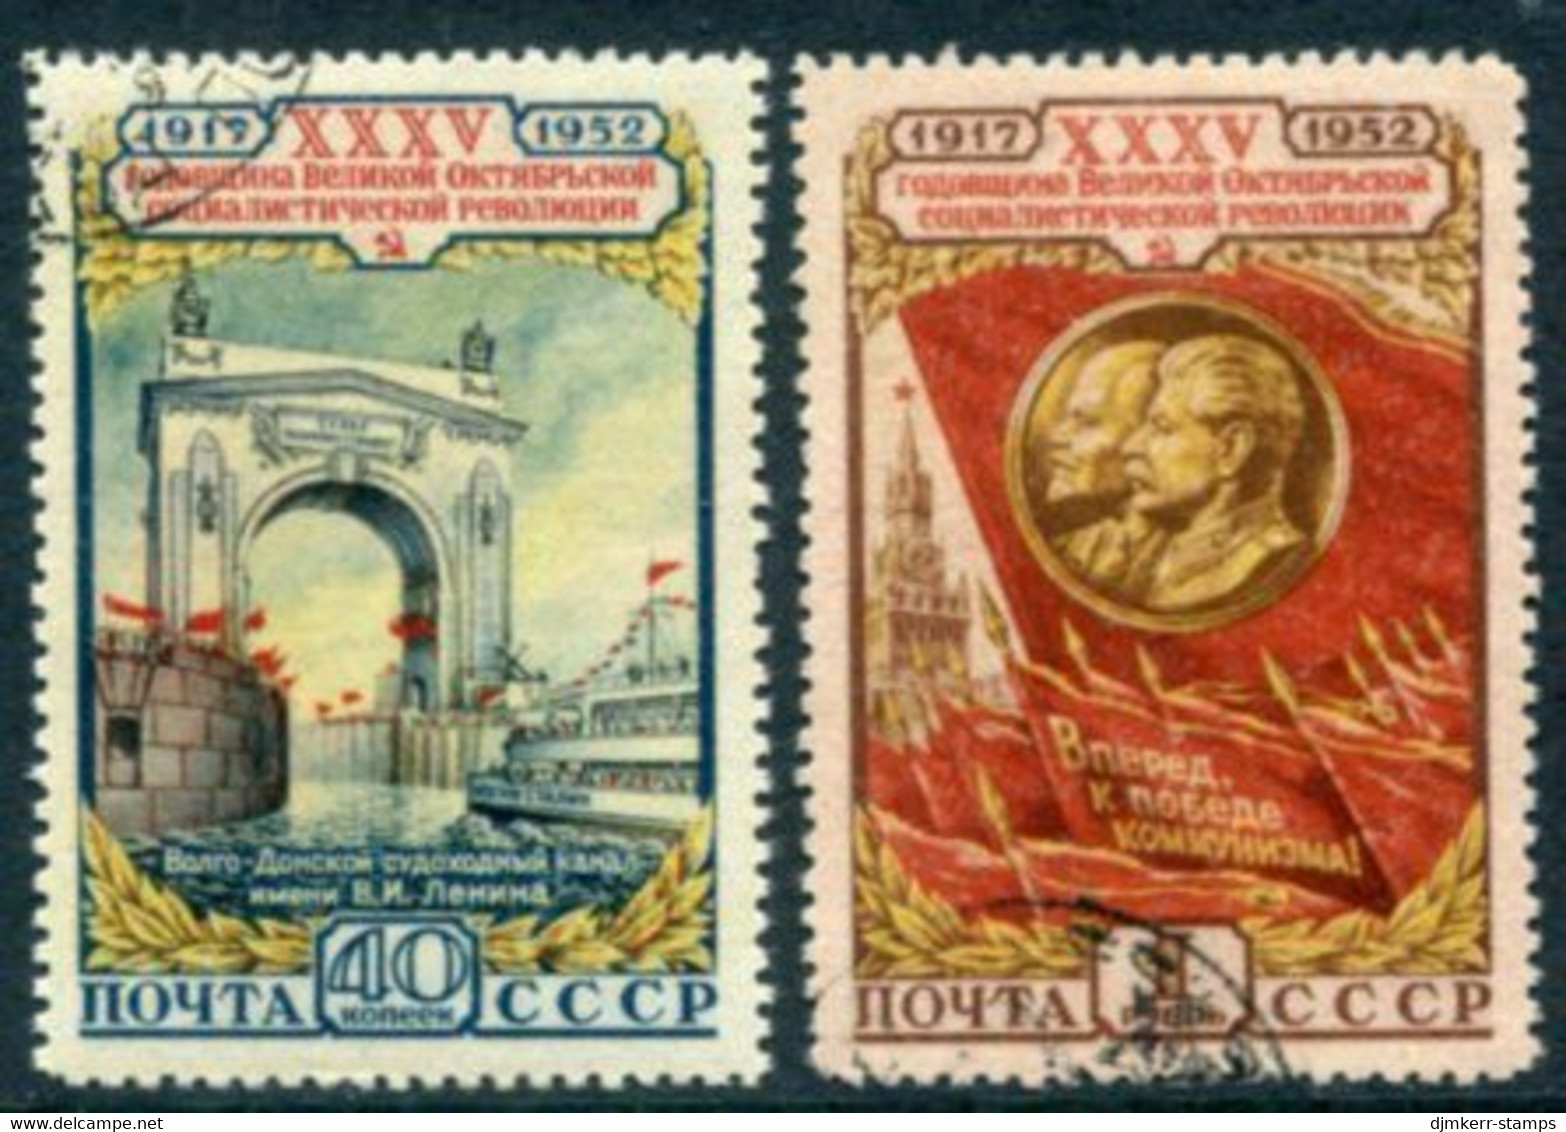 SOVIET UNION 1952 October Revolution  Anniversary Used.  Michel 1646-47 - Gebruikt